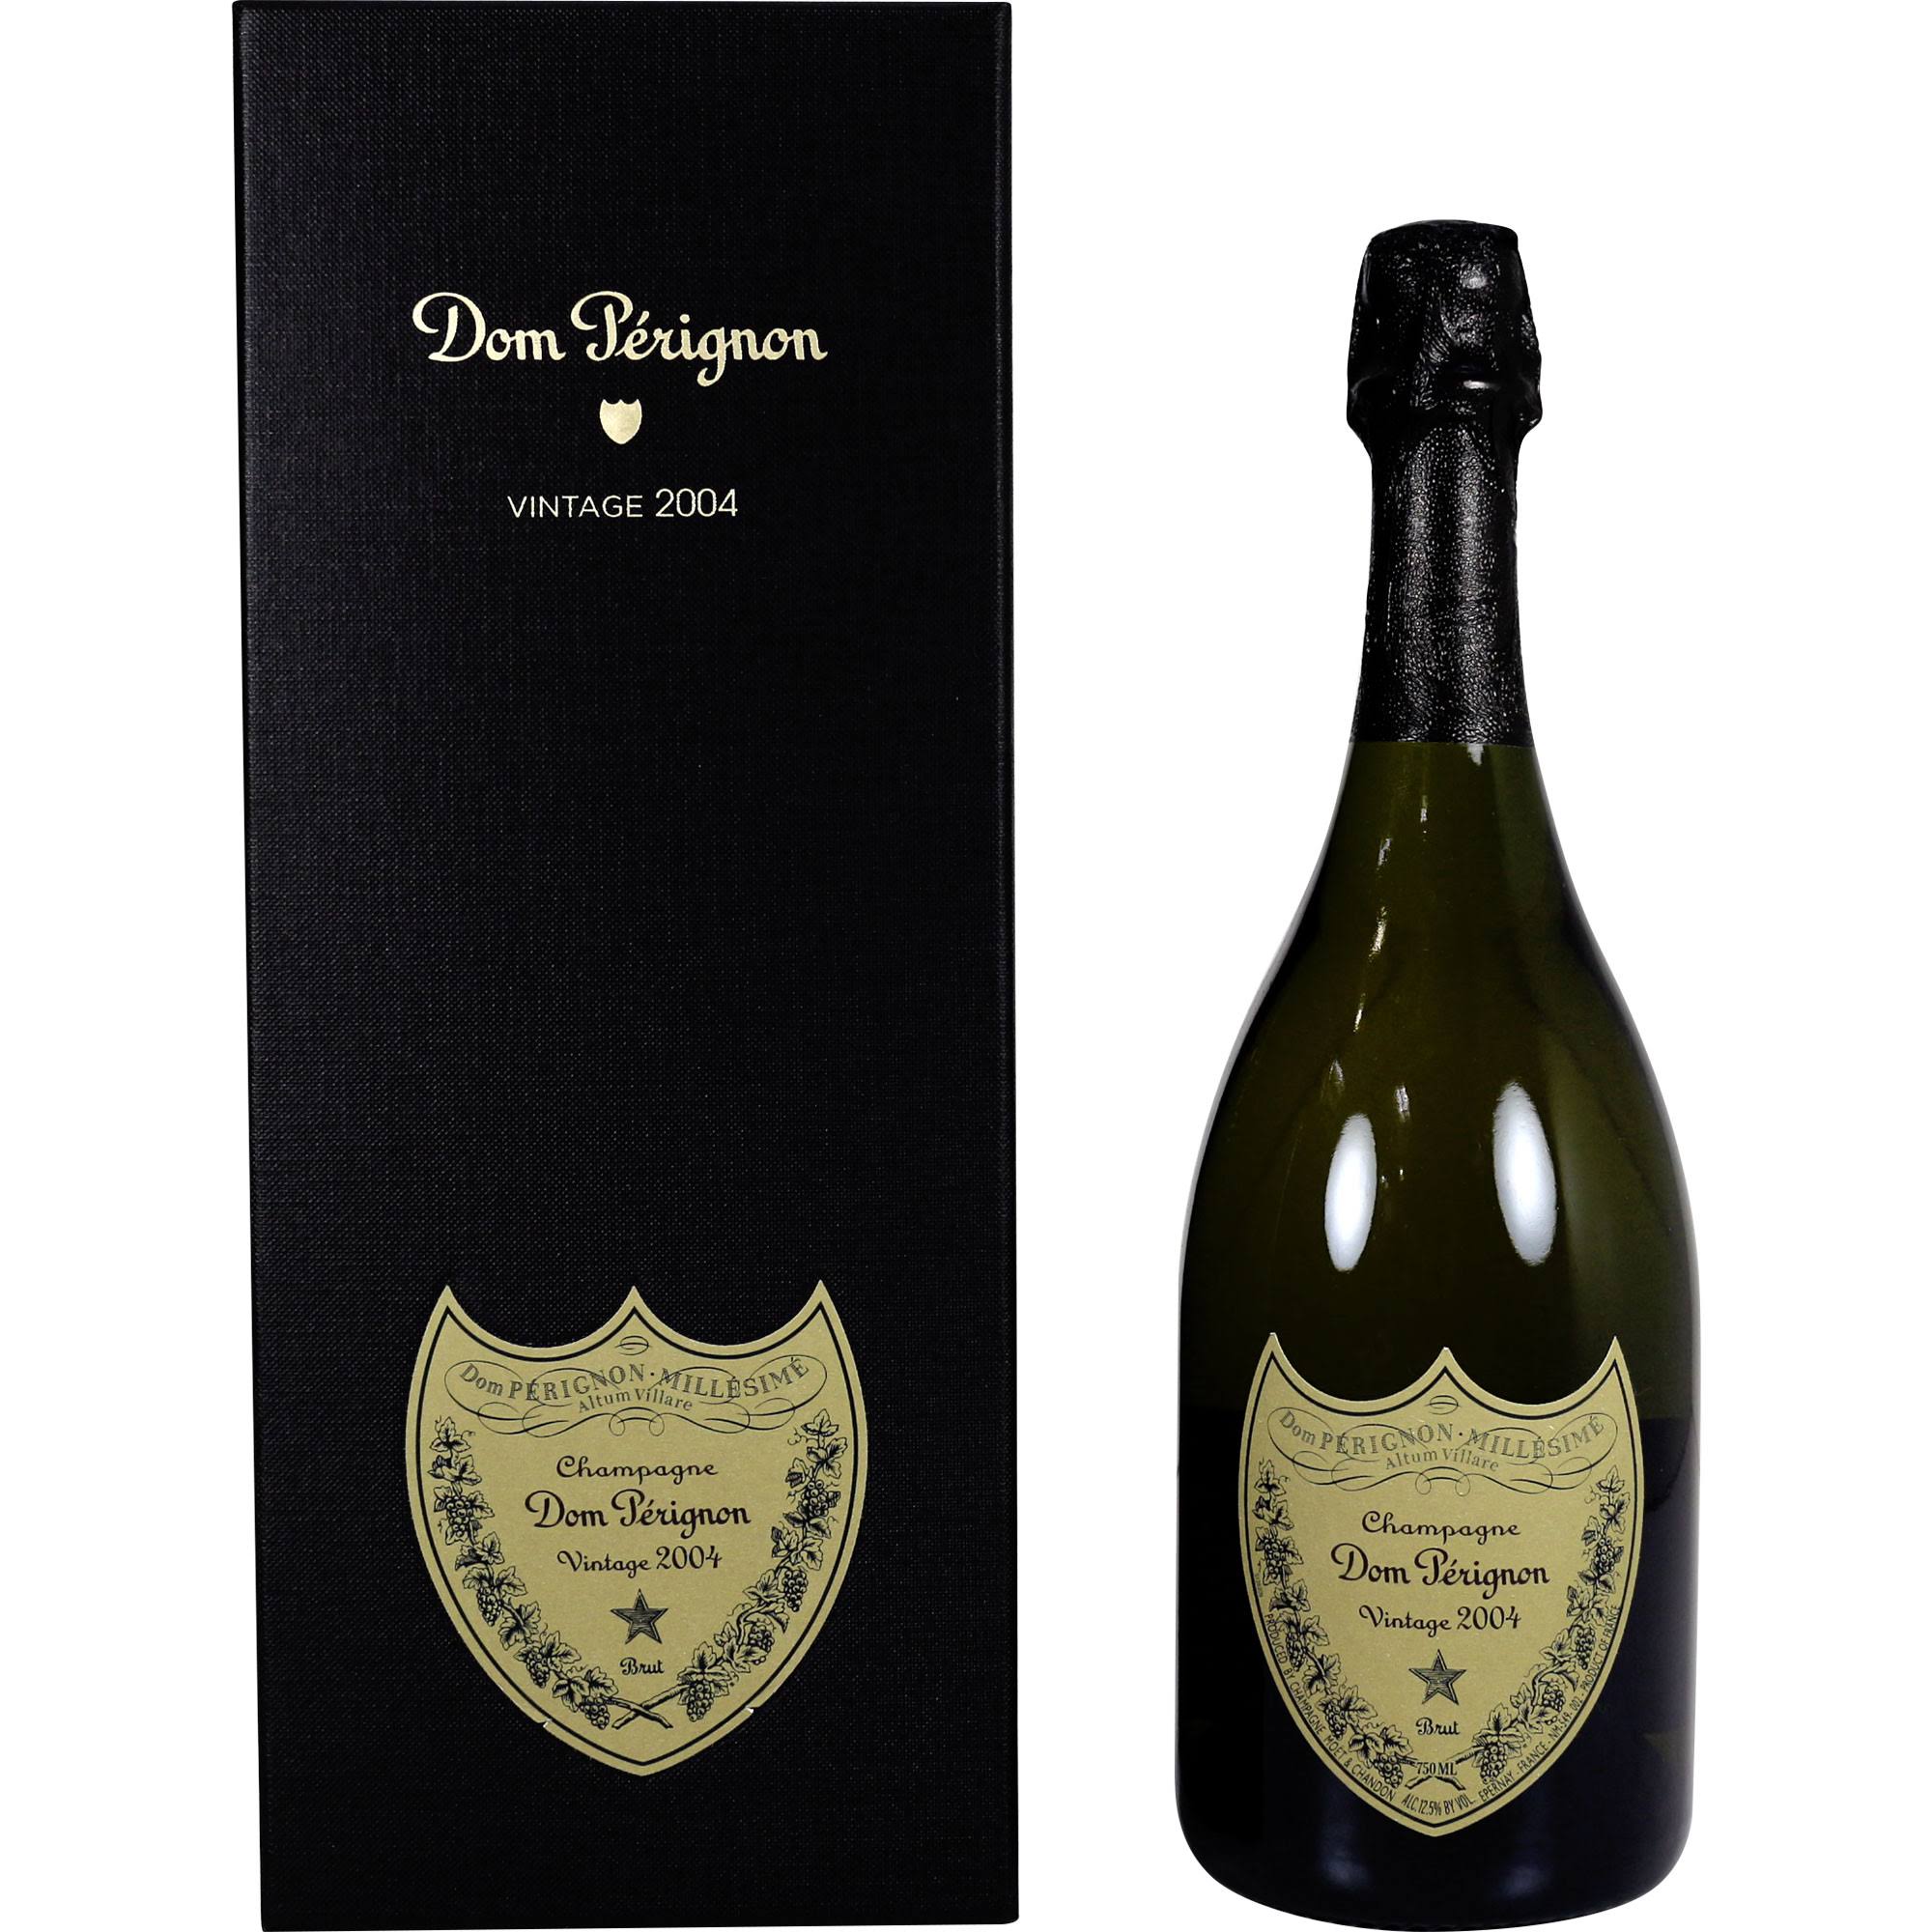 DOM Pérignon Champagne Vintage 2010 (France)